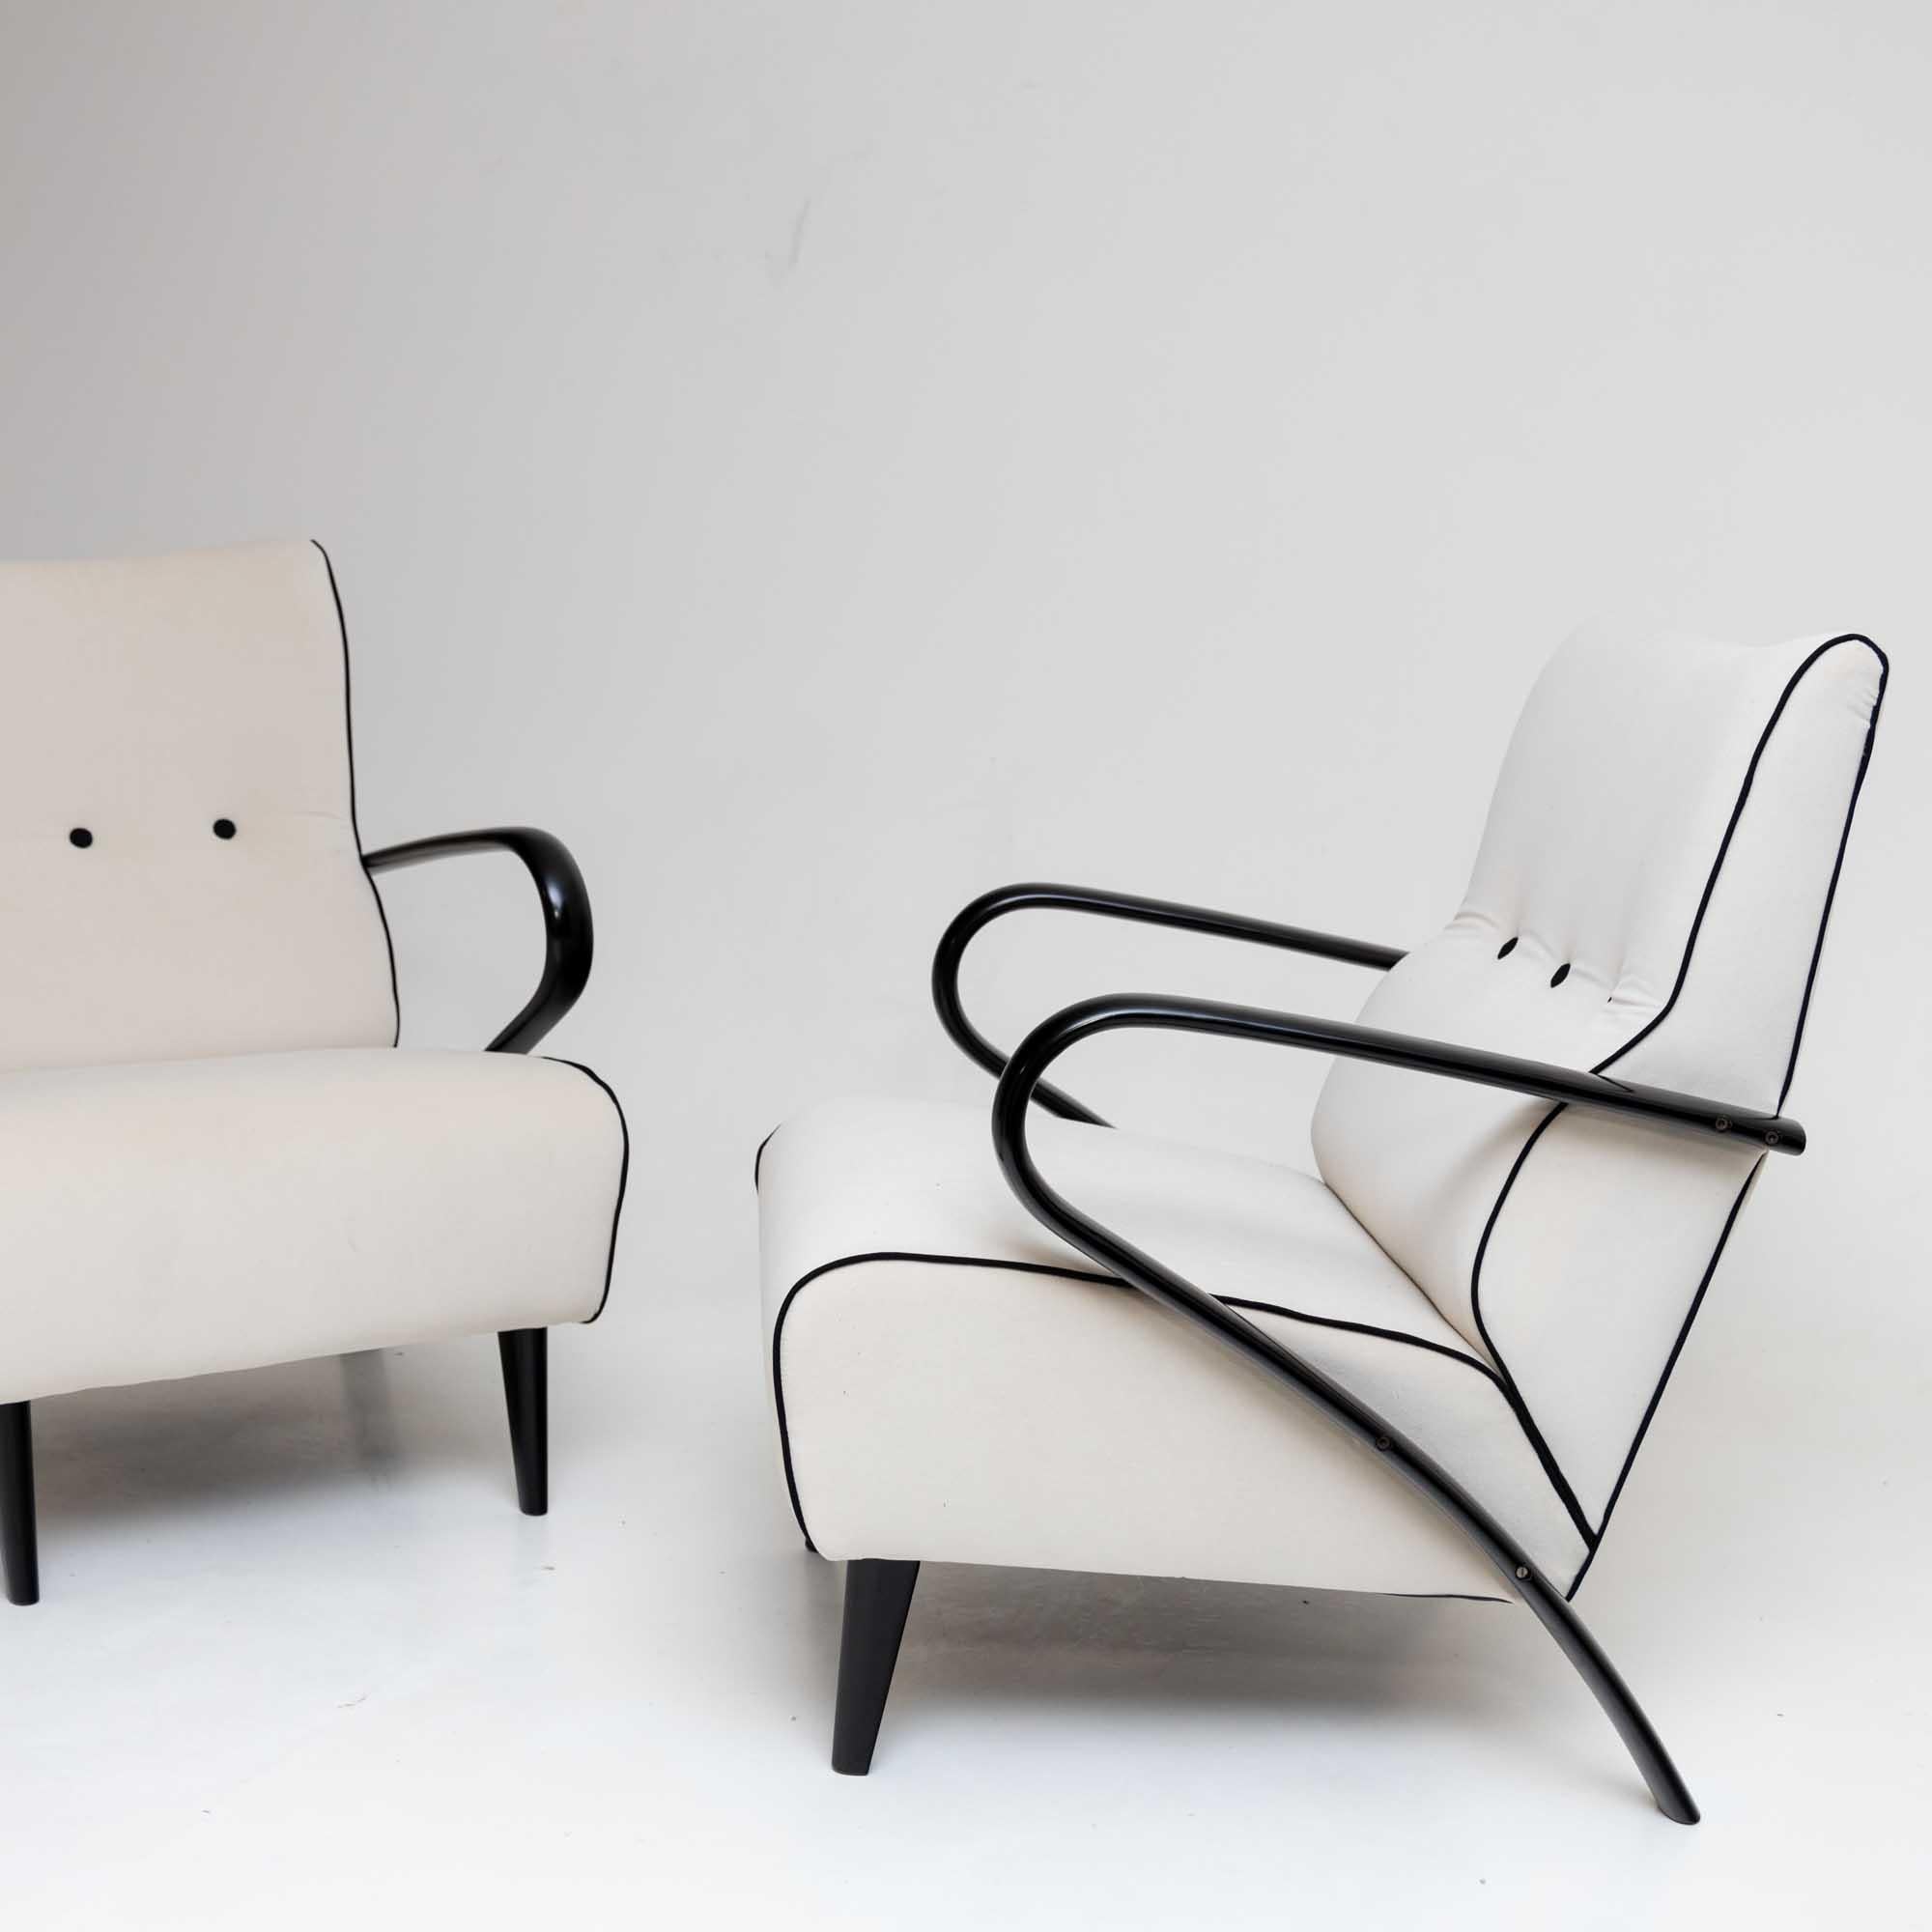 Ein Paar elegante Loungesessel mit ebonisierten Armlehnen und gepolsterten Sitzen. Die Sessel sind poliert und neu gepolstert worden. Der weiße Stoff wird durch schwarze Knöpfe und schwarze Paspeln auf minimalistische Weise kontrastiert.